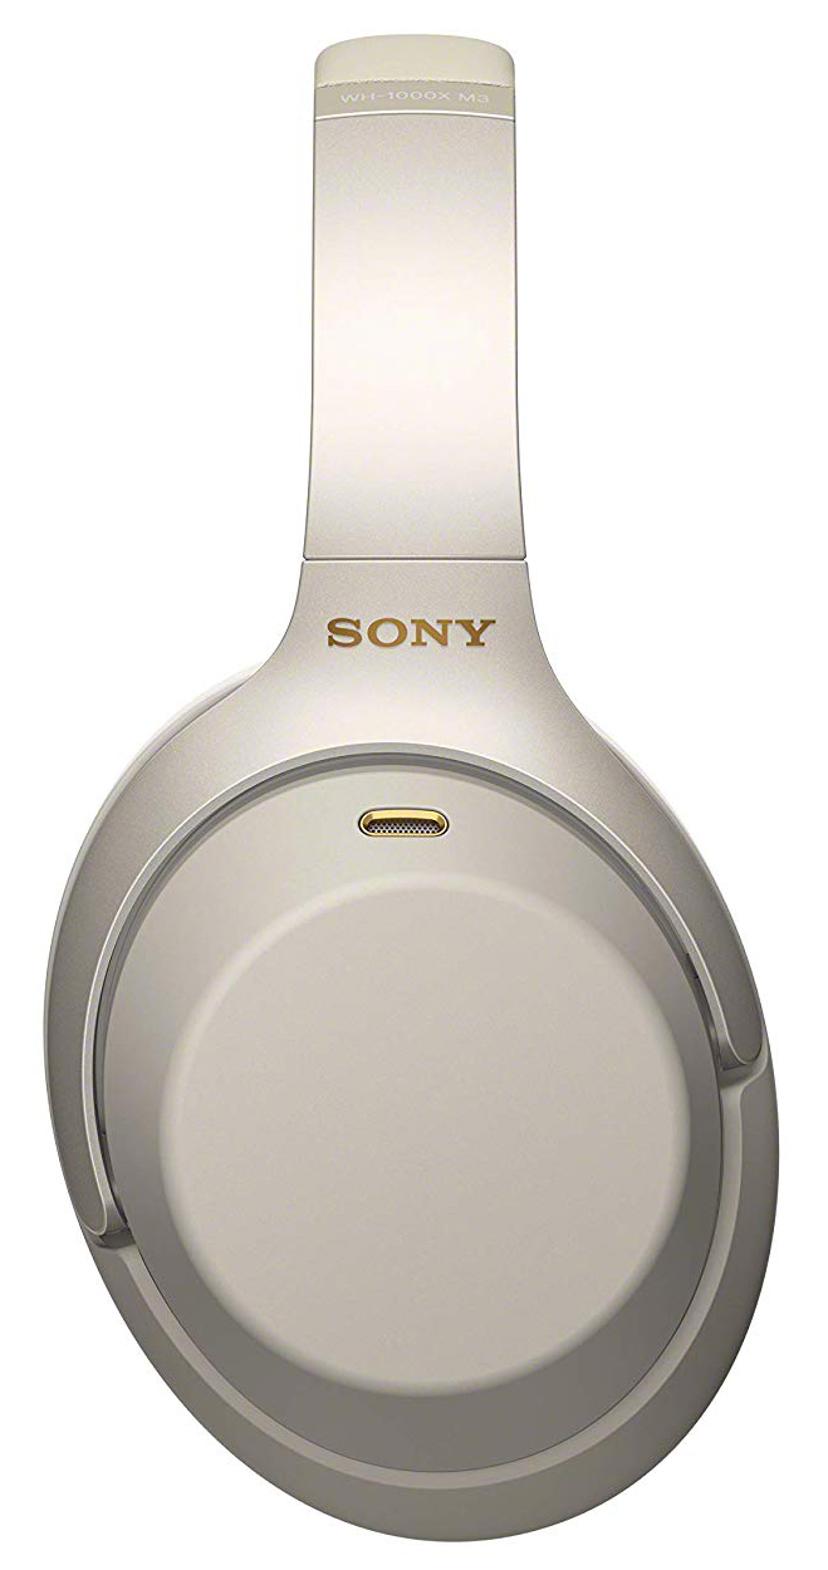 Sony WH-1000XM3 trådlösa hörlurar med mikrofon Hörlurar 3,5 mm kontakt Silver